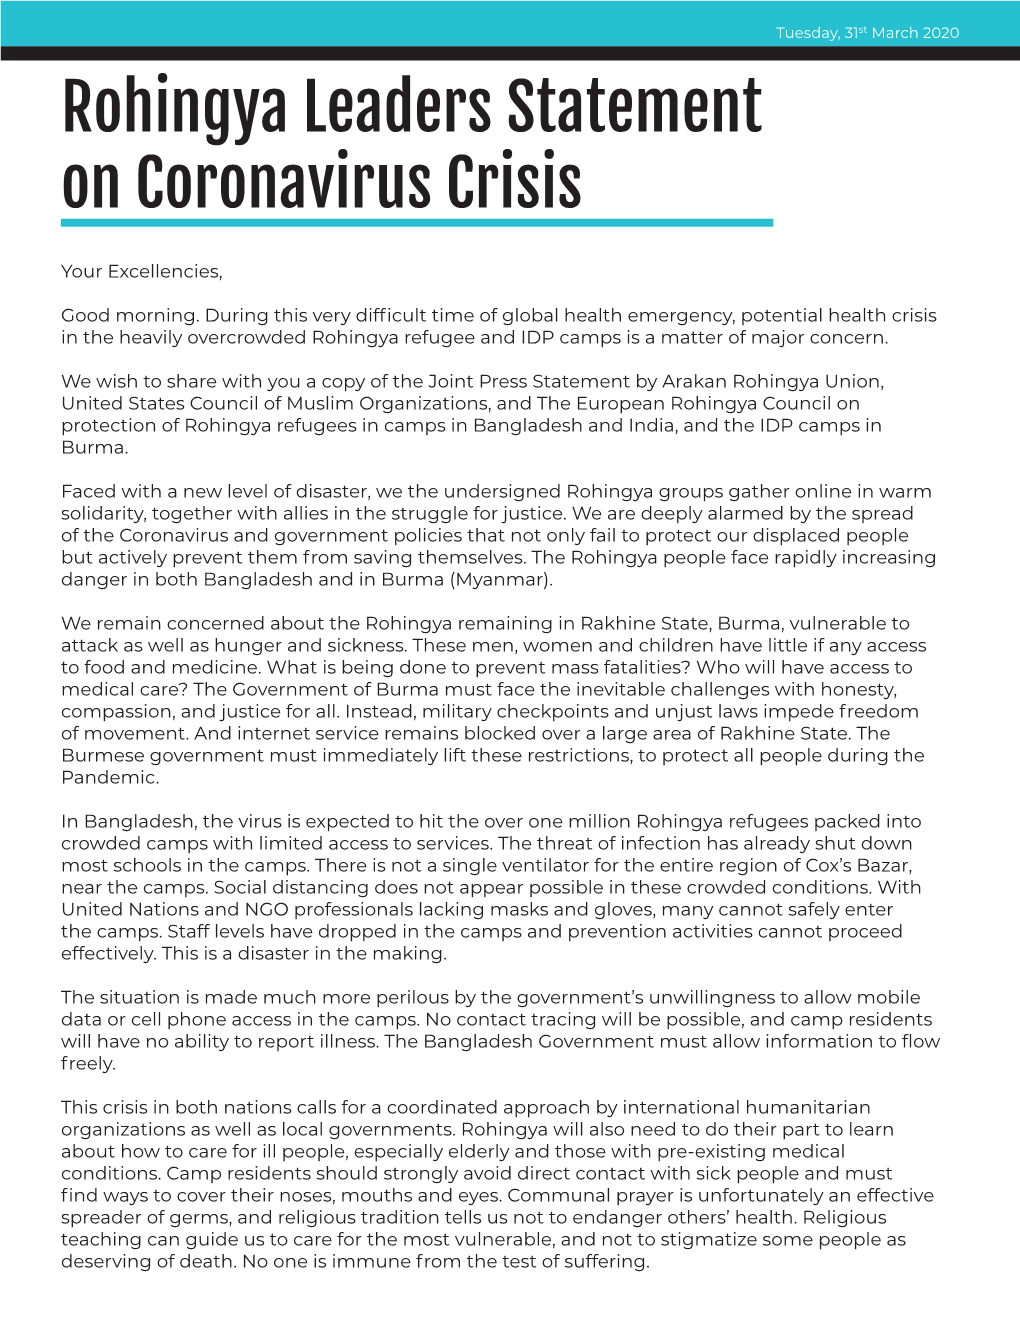 Rohingya Leaders Statement on Coronavirus Crisis